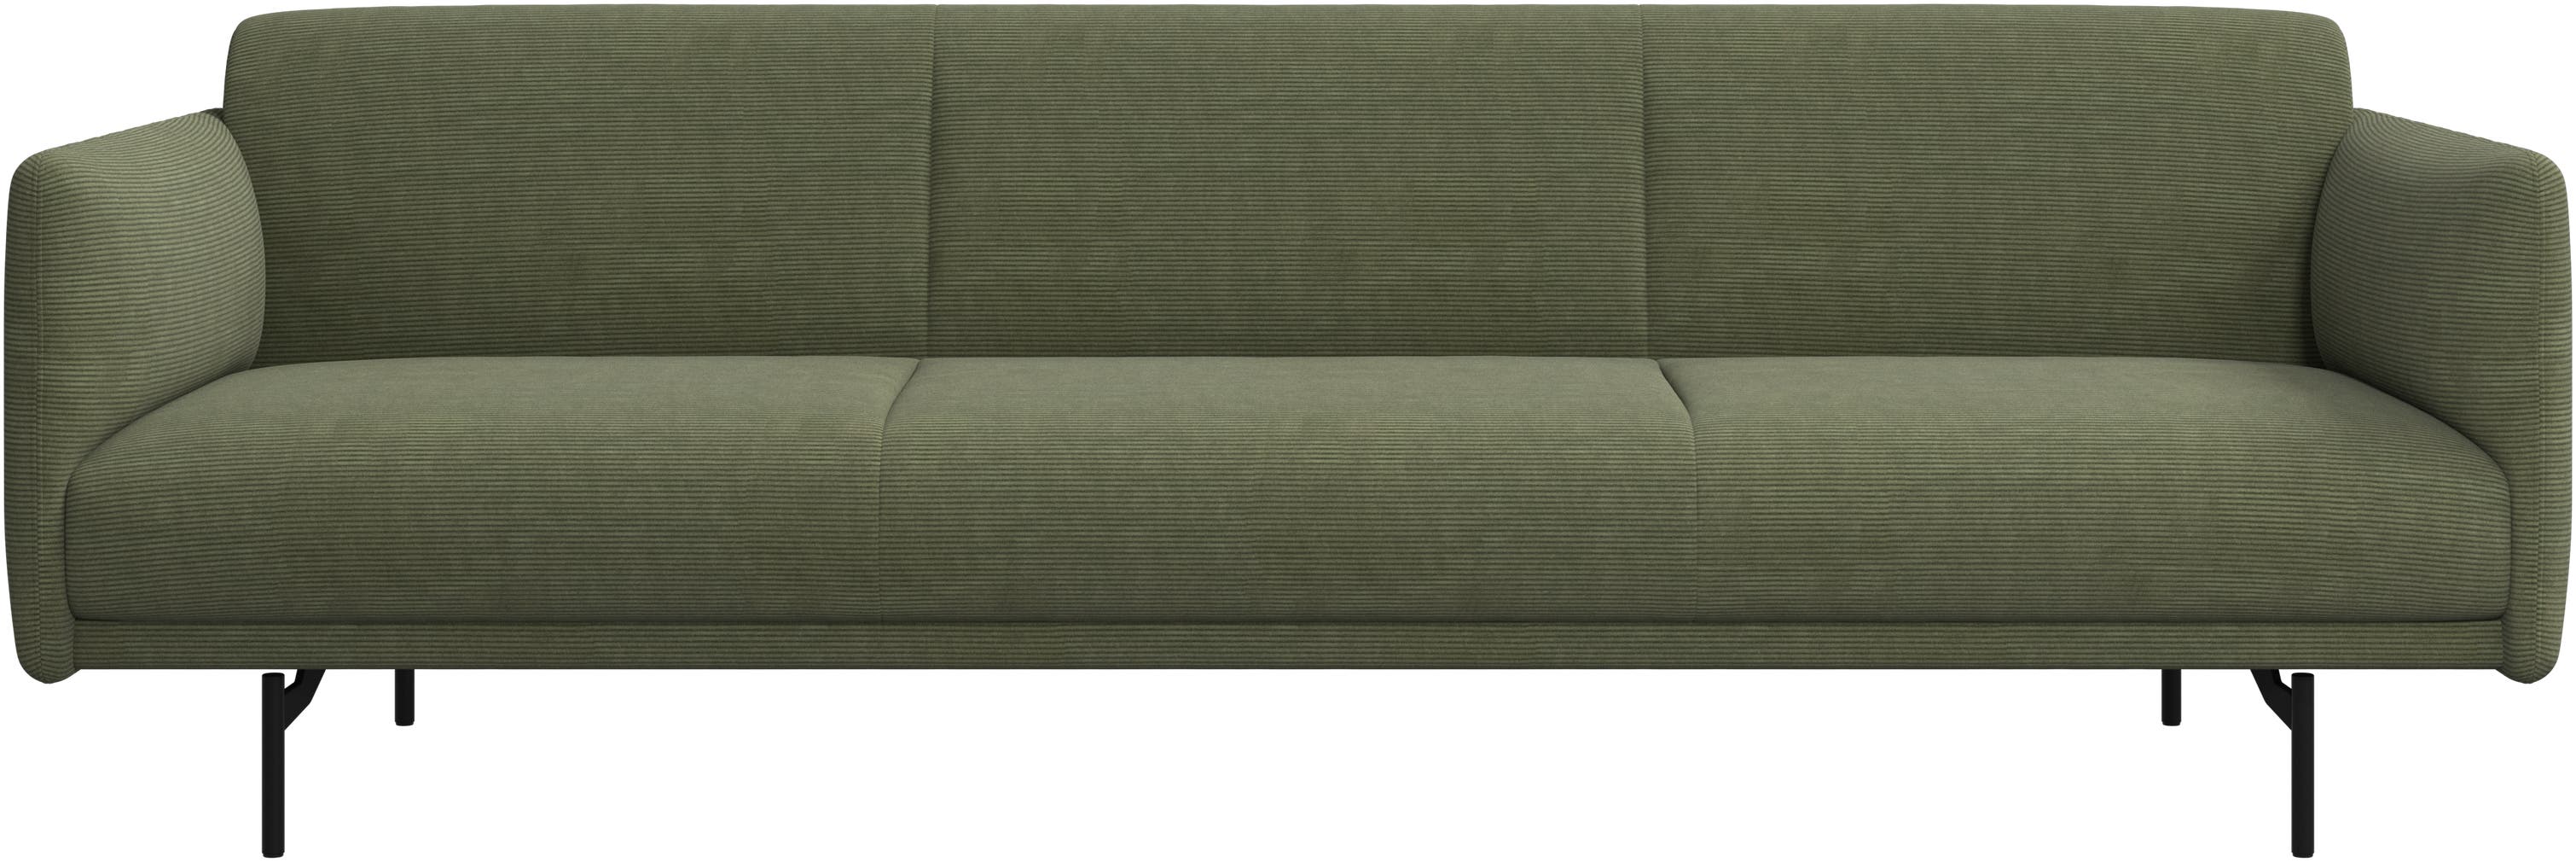 Berne 3 -személyes kanapé